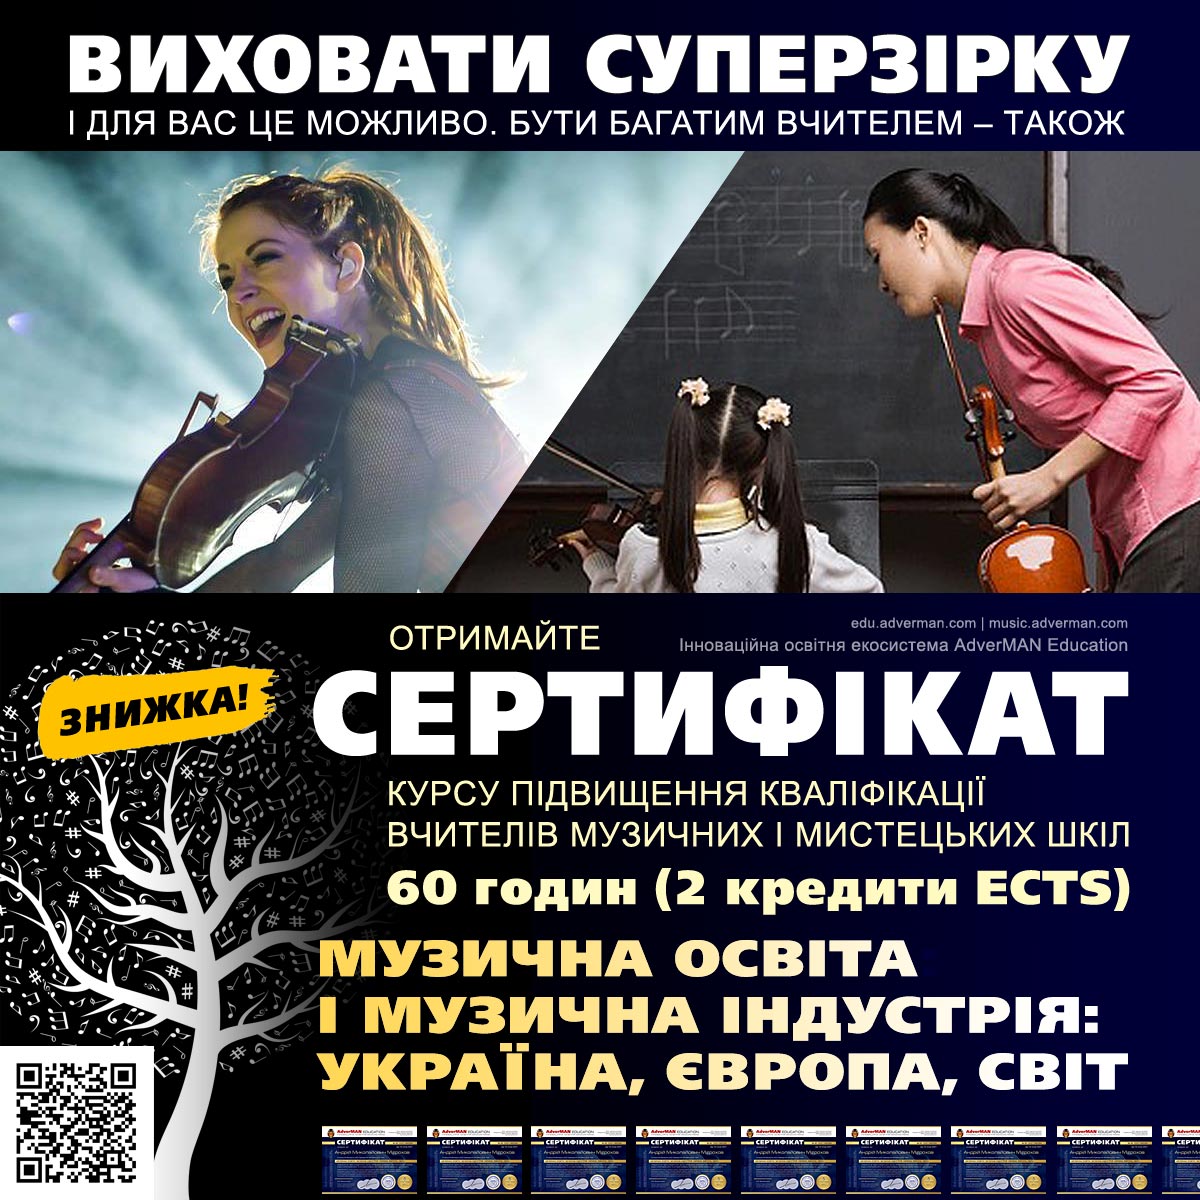 Музична освіта і музична індустрія: Україна, Європа, світ